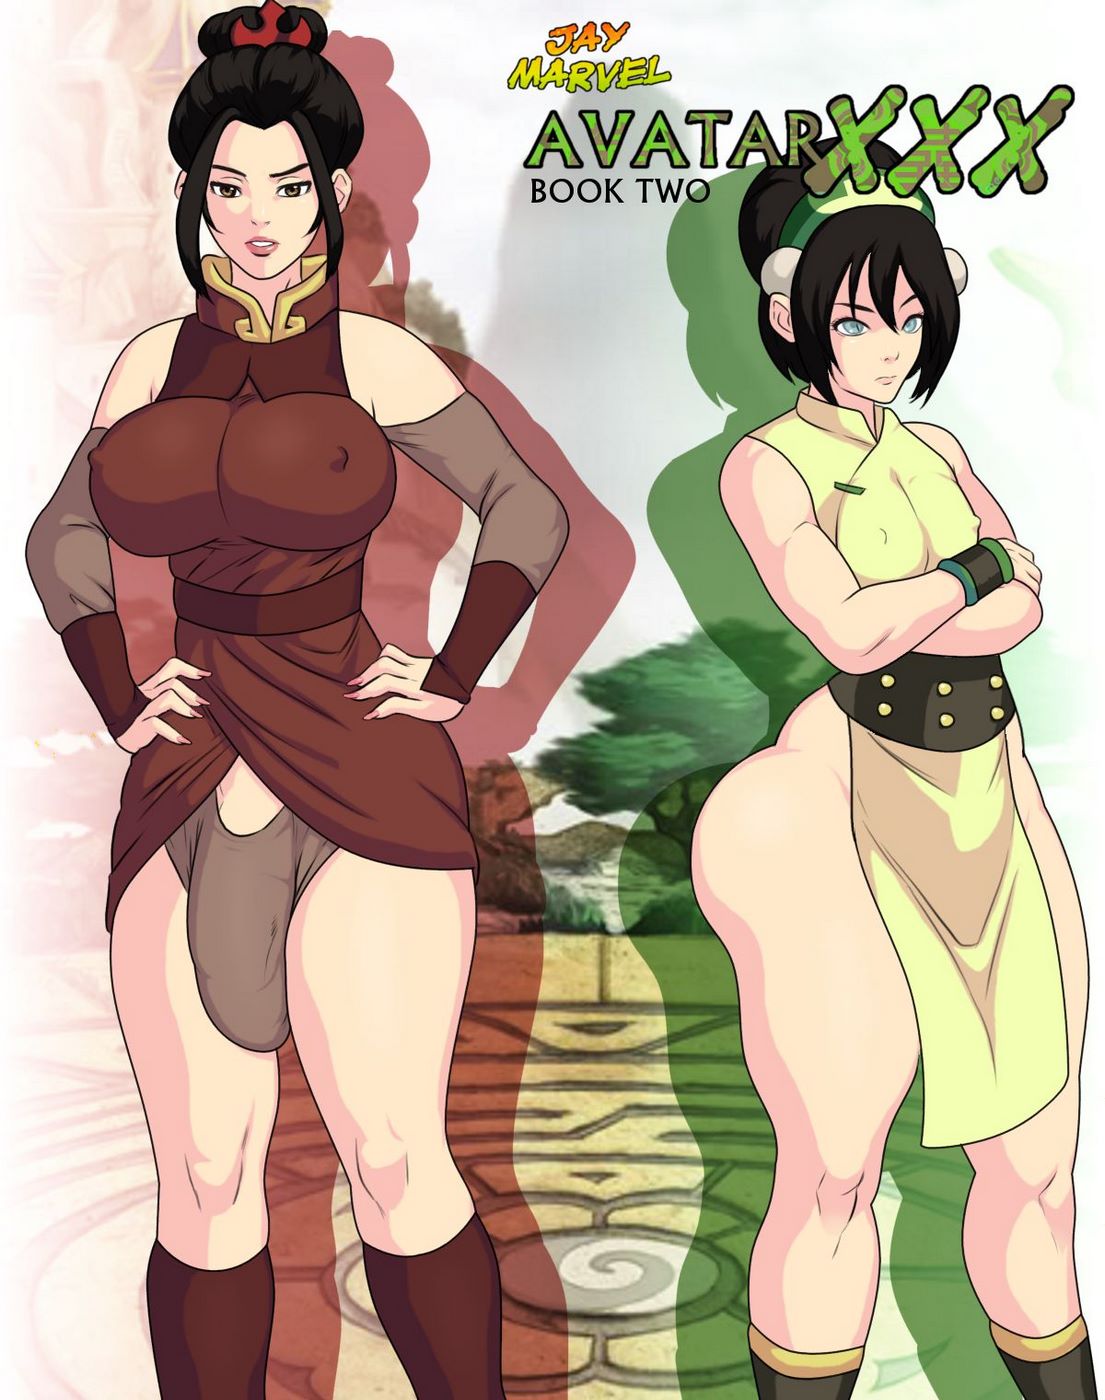 Xxx 2 Xx - Jay Marvel] -Avatar XXX- Book Two â€¢ Free Porn Comics